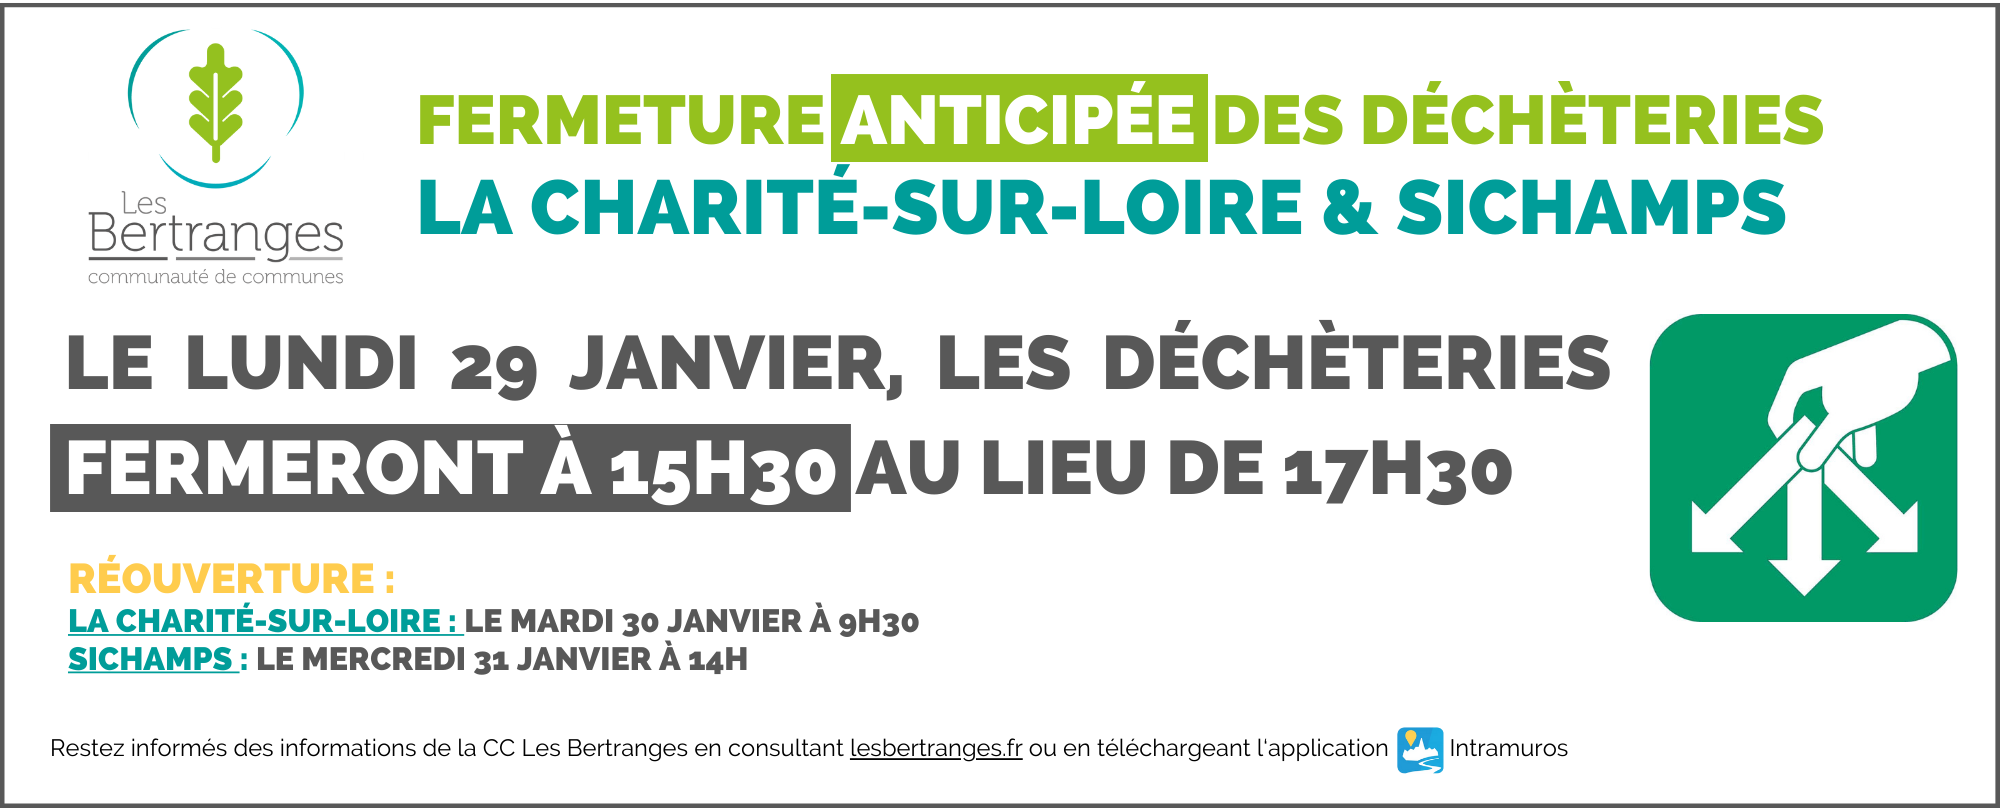 Nous vous informons que le lundi 29 janvier, les déchèteries de Sichamps et la Charité-sur-Loire fermeront de manière anticipée à 15h30 au lieu de 17h30 Réouverture : LA CHARITÉ-SUR-LOIRE : mardi 30 janvier à 9h30 SICHAMPS : mercredi 31 janvier à 14h